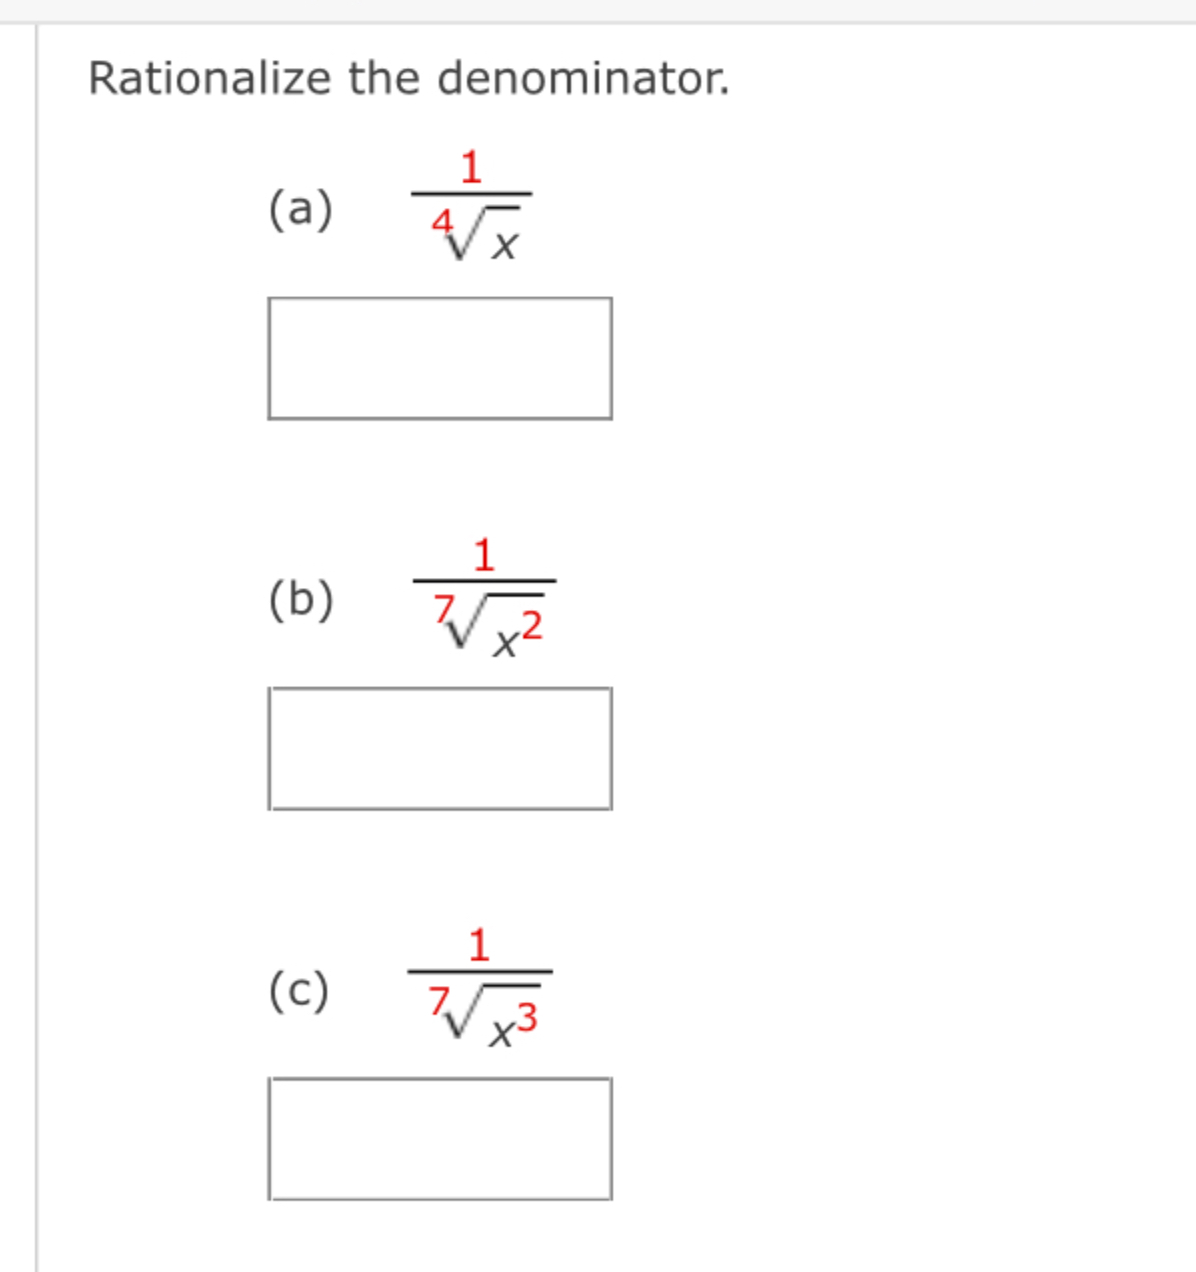 Solved Rationalize the denominator.(a) 1x4(b) 1x27(c) 1x37 | Chegg.com